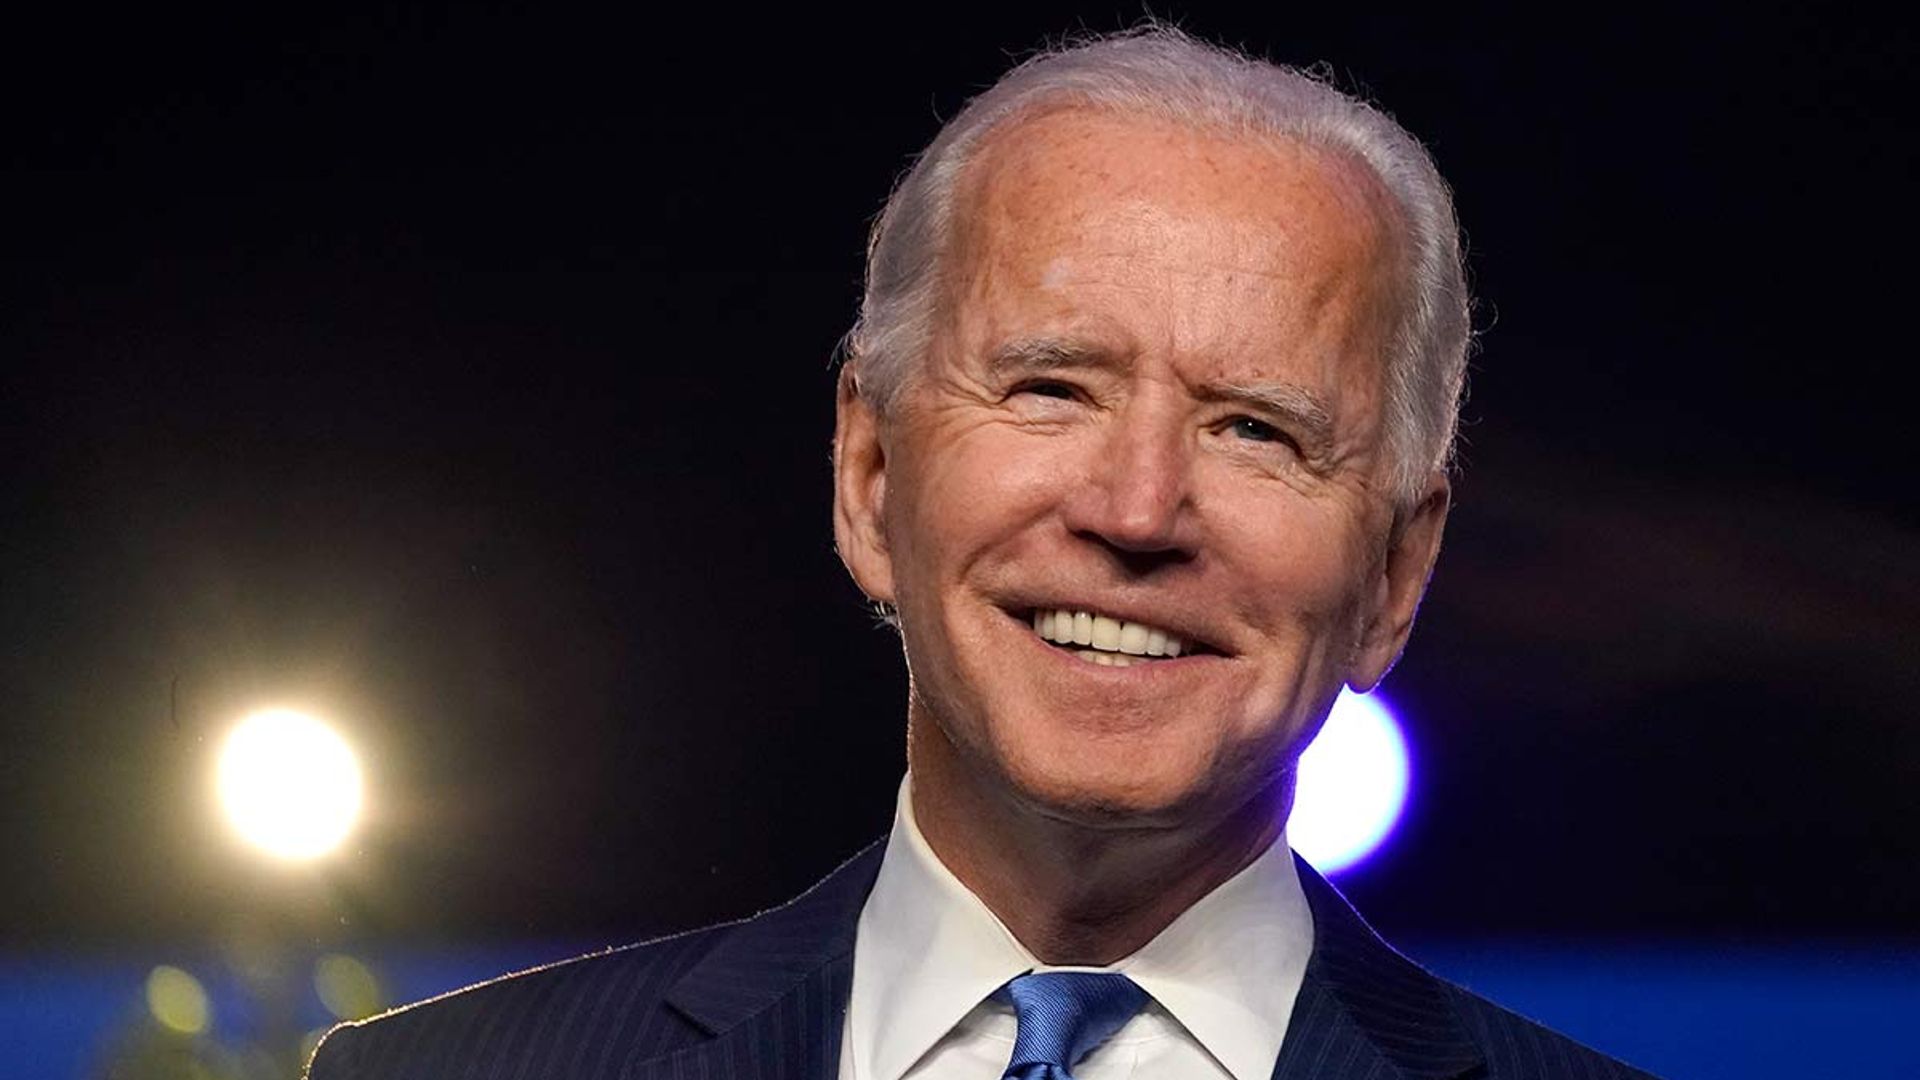 Celebrities react to Joe Biden becoming president